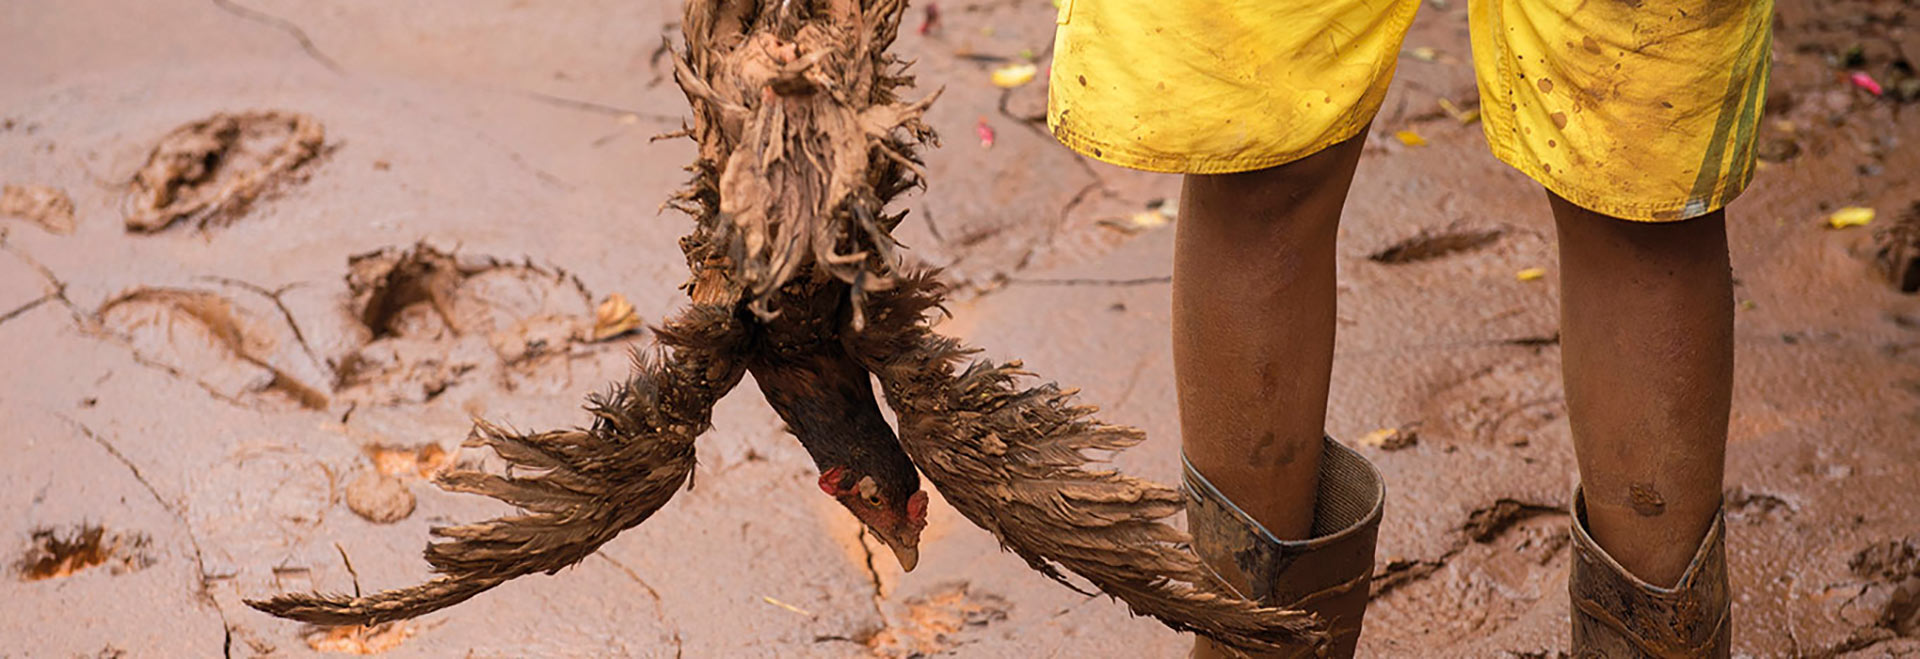 Foto de mostra os pés de uma criança enterrados na lama. Ele usa botas, bermuda branca e está segurando uma galinha que aparece de cabeça para baixo.